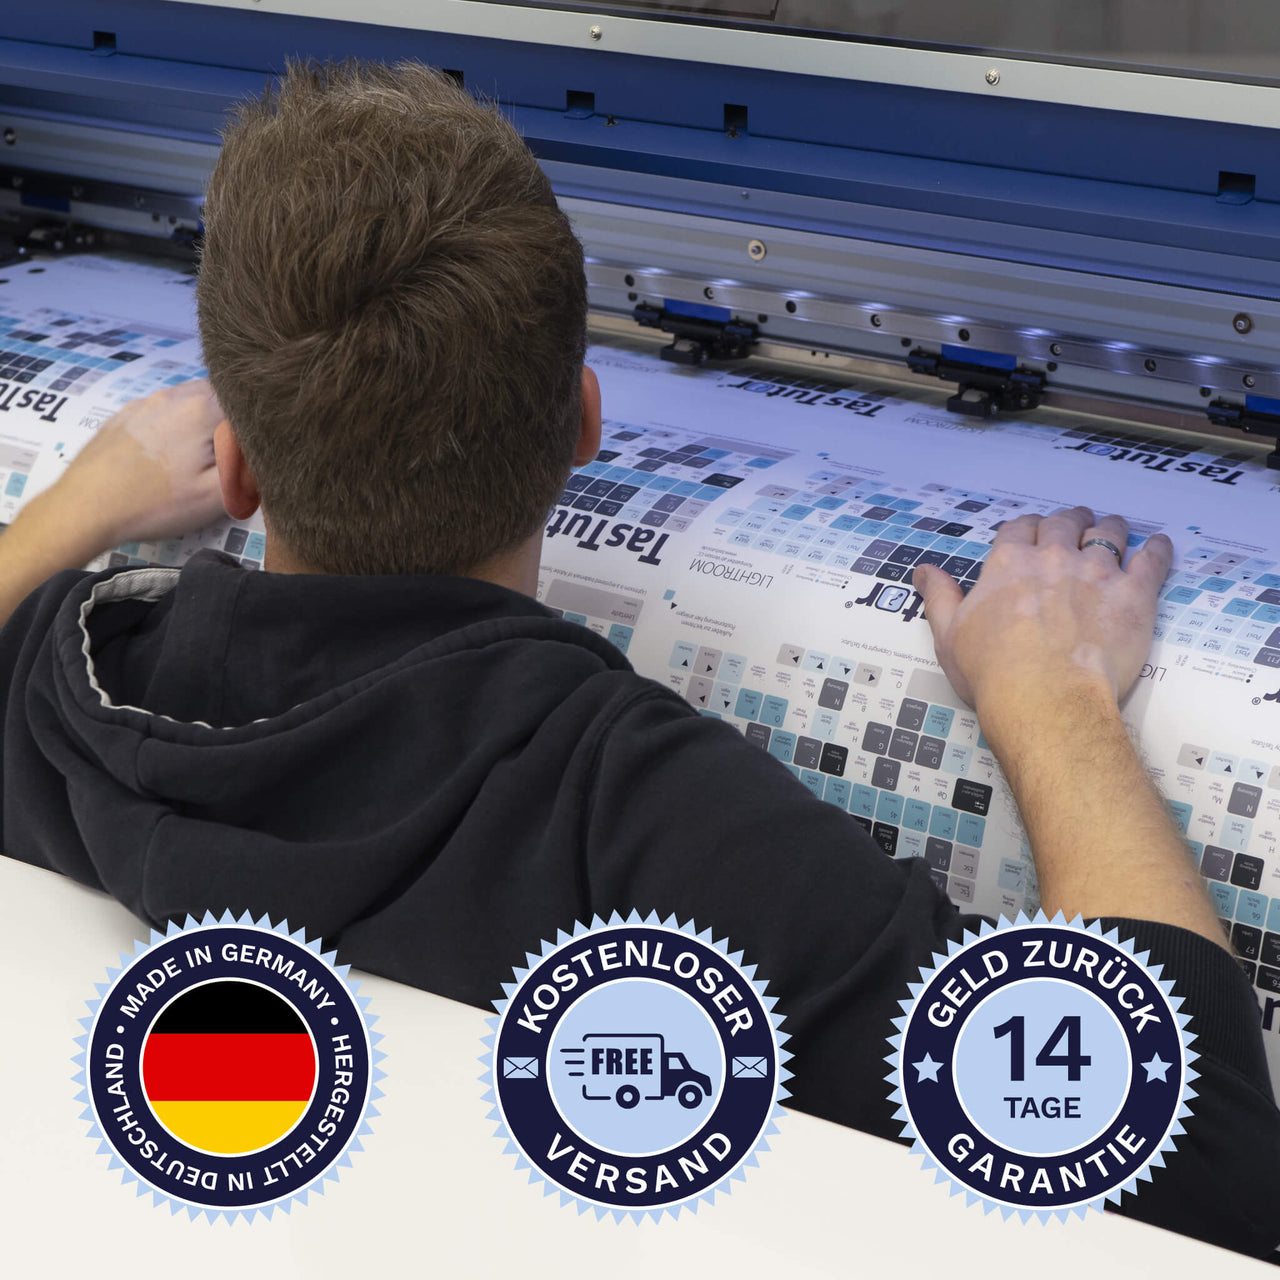 Excel Tastaturaufkleber werden in Deutschland hergestellt. Der Versand ist kostenlos und wir gewährleisten 14 Tage Geld zurück Garantie | TasTutor